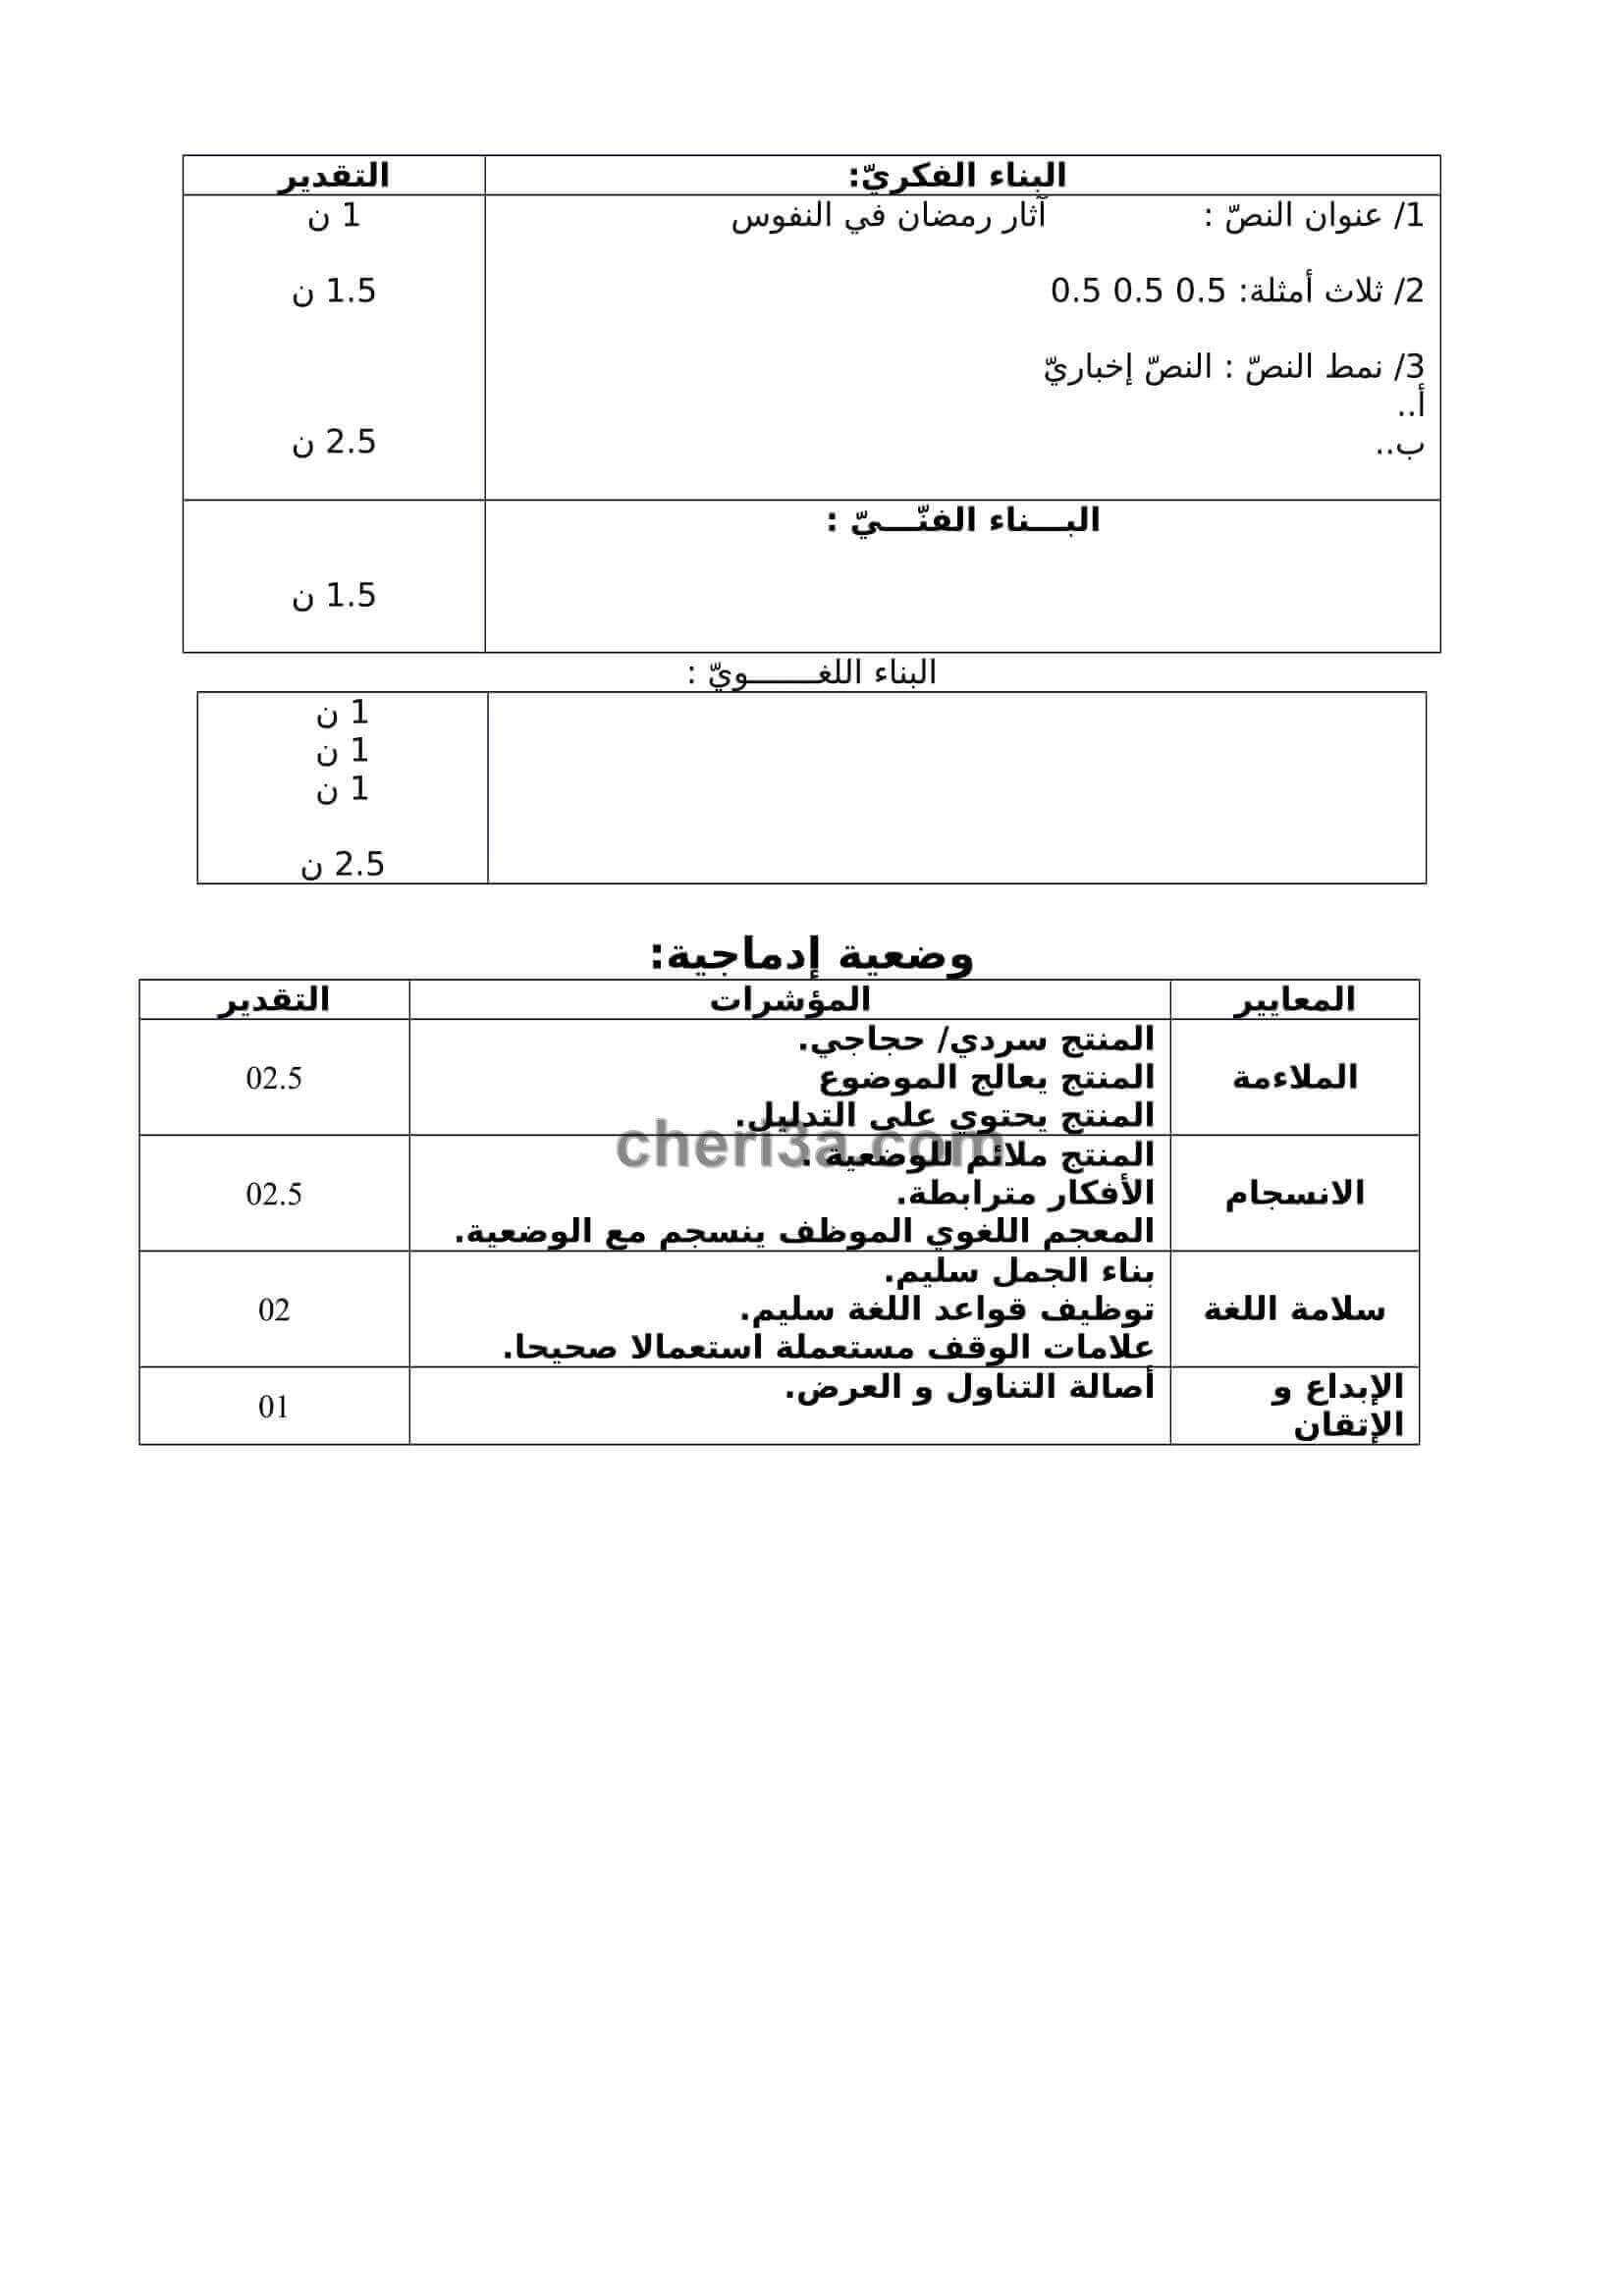 اختبار الفصل الاول للسنة الثالثة متوسط في اللغة العربية 